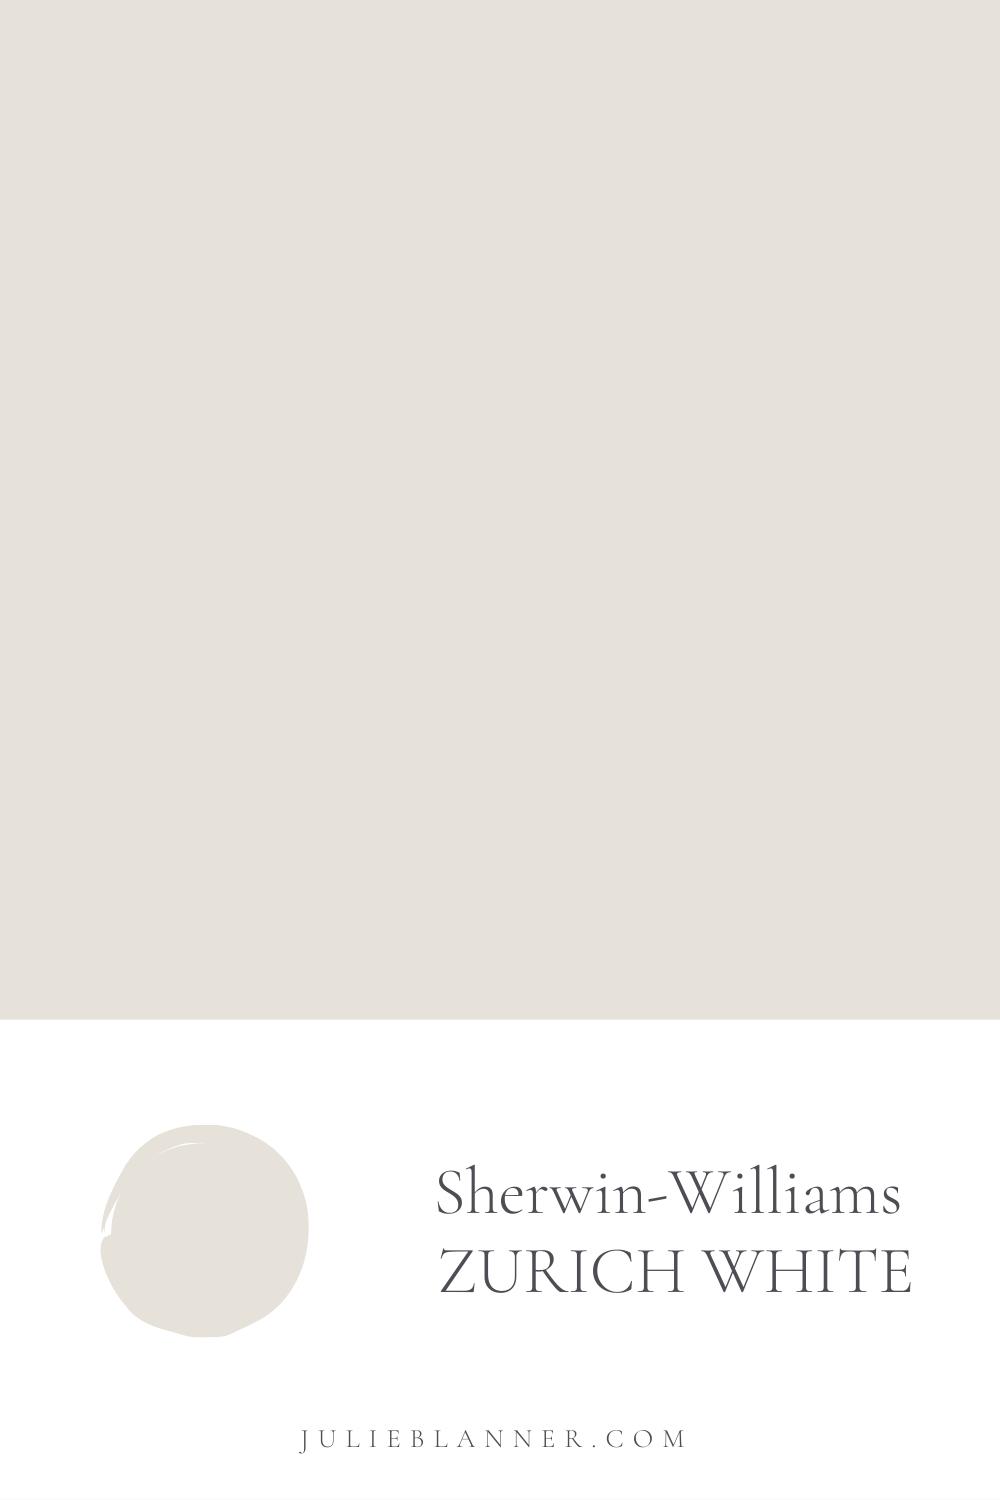 Sherwin Williams Zurich White paint swatch